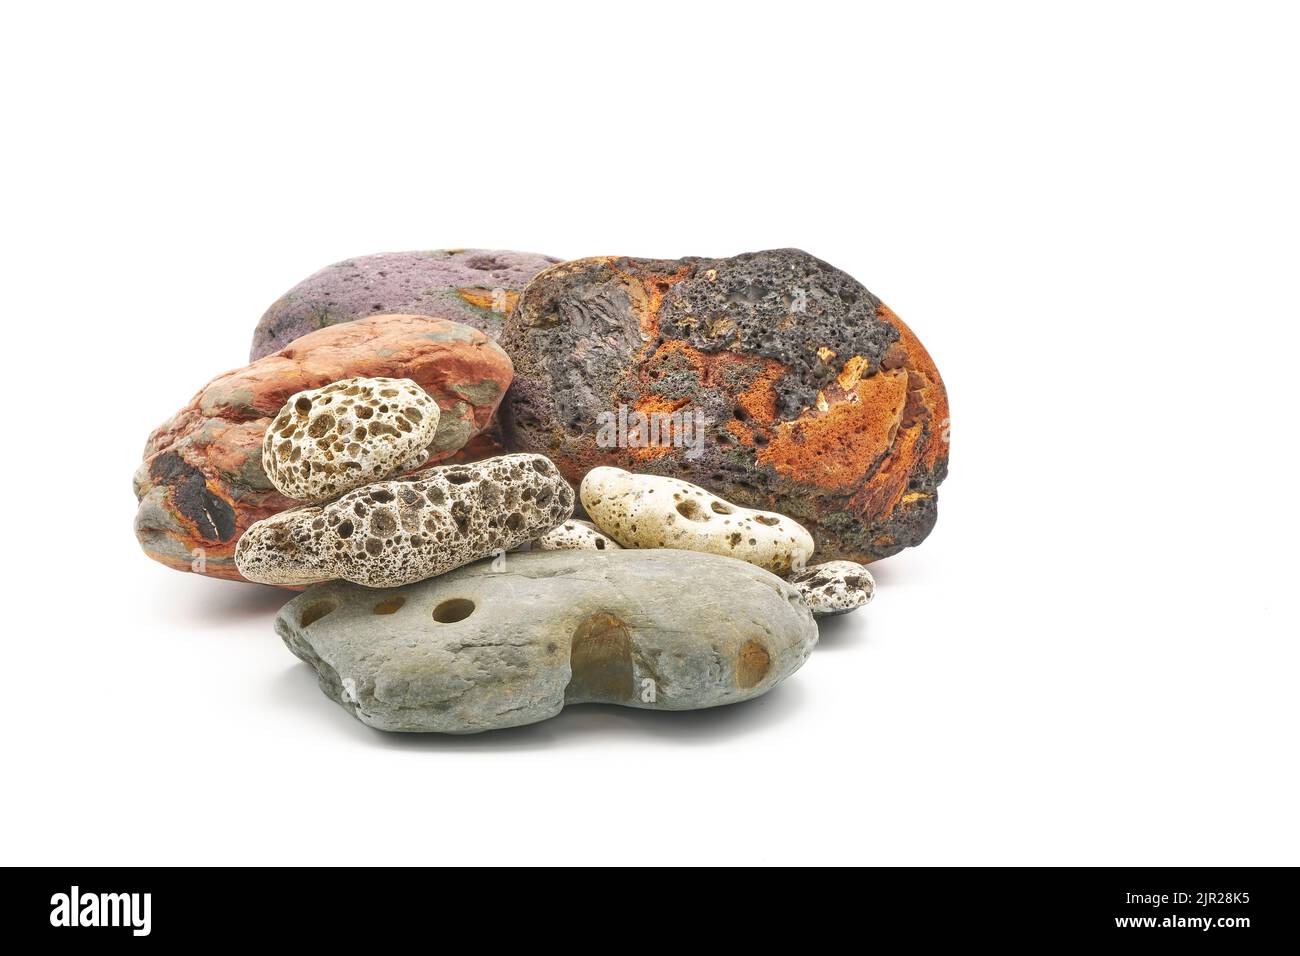 Exemples de roches de mer avec des trous s'ennuient dans elles par des piddocks et d'autres mollusques, vers et éponges. Ces types de rochers sont communs sur de nombreuses plages. Banque D'Images